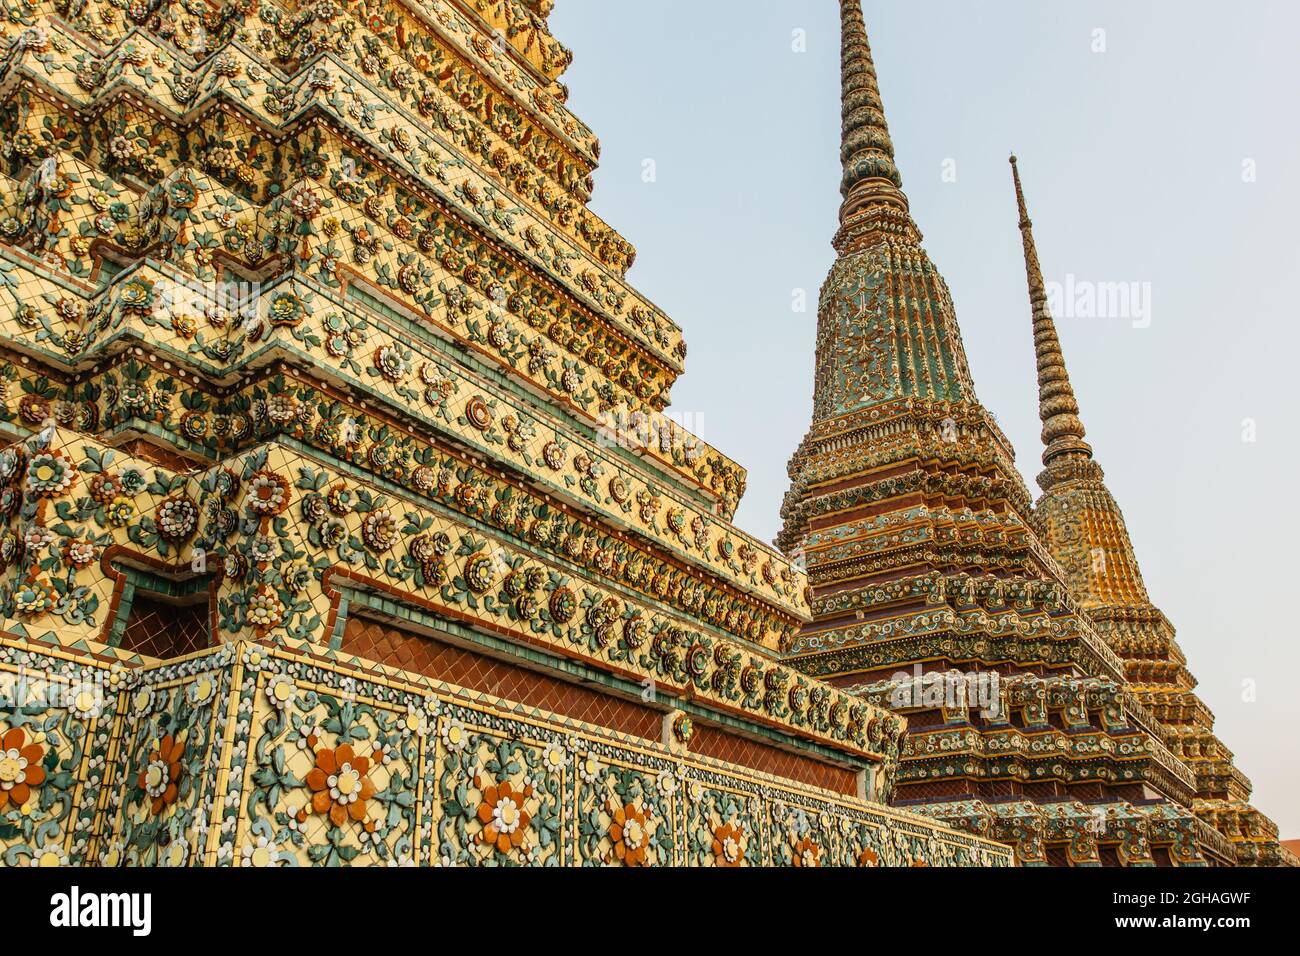 Bangkok, Thailand - Januar 17,2020. Wat Pho, alter buddhistischer Tempelkomplex mit liegender Buddha. Beliebte Touristenattraktion enthält mehrere Hallen Stockfoto